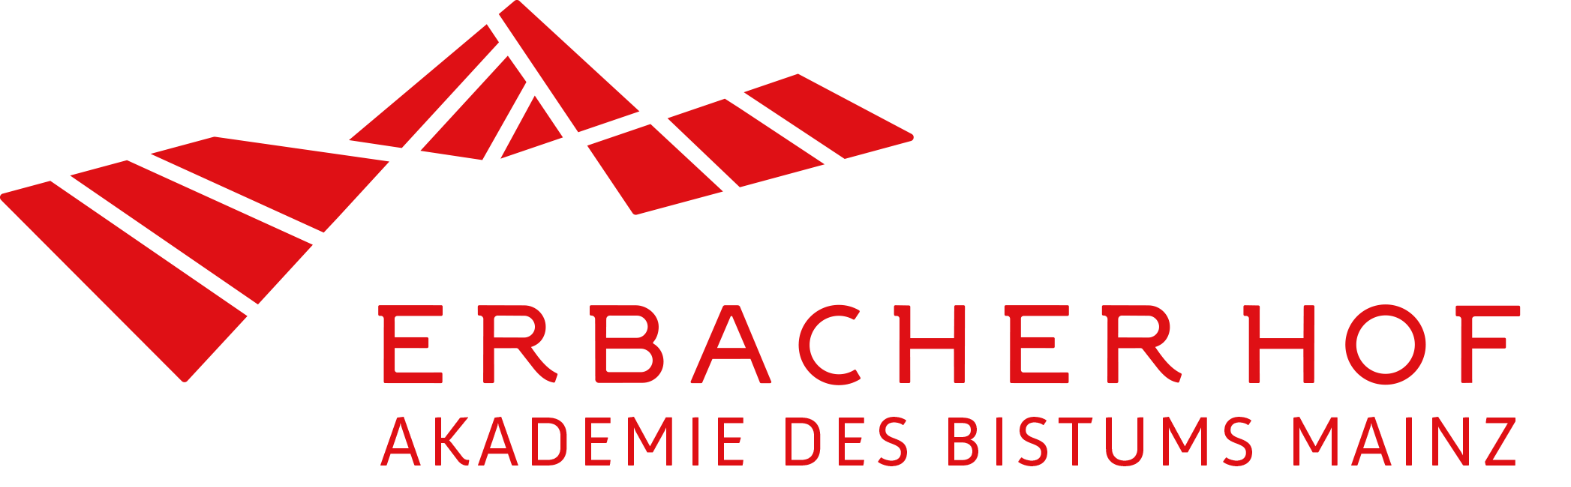 EBH_Akademie-Logo-rot (c) EBH